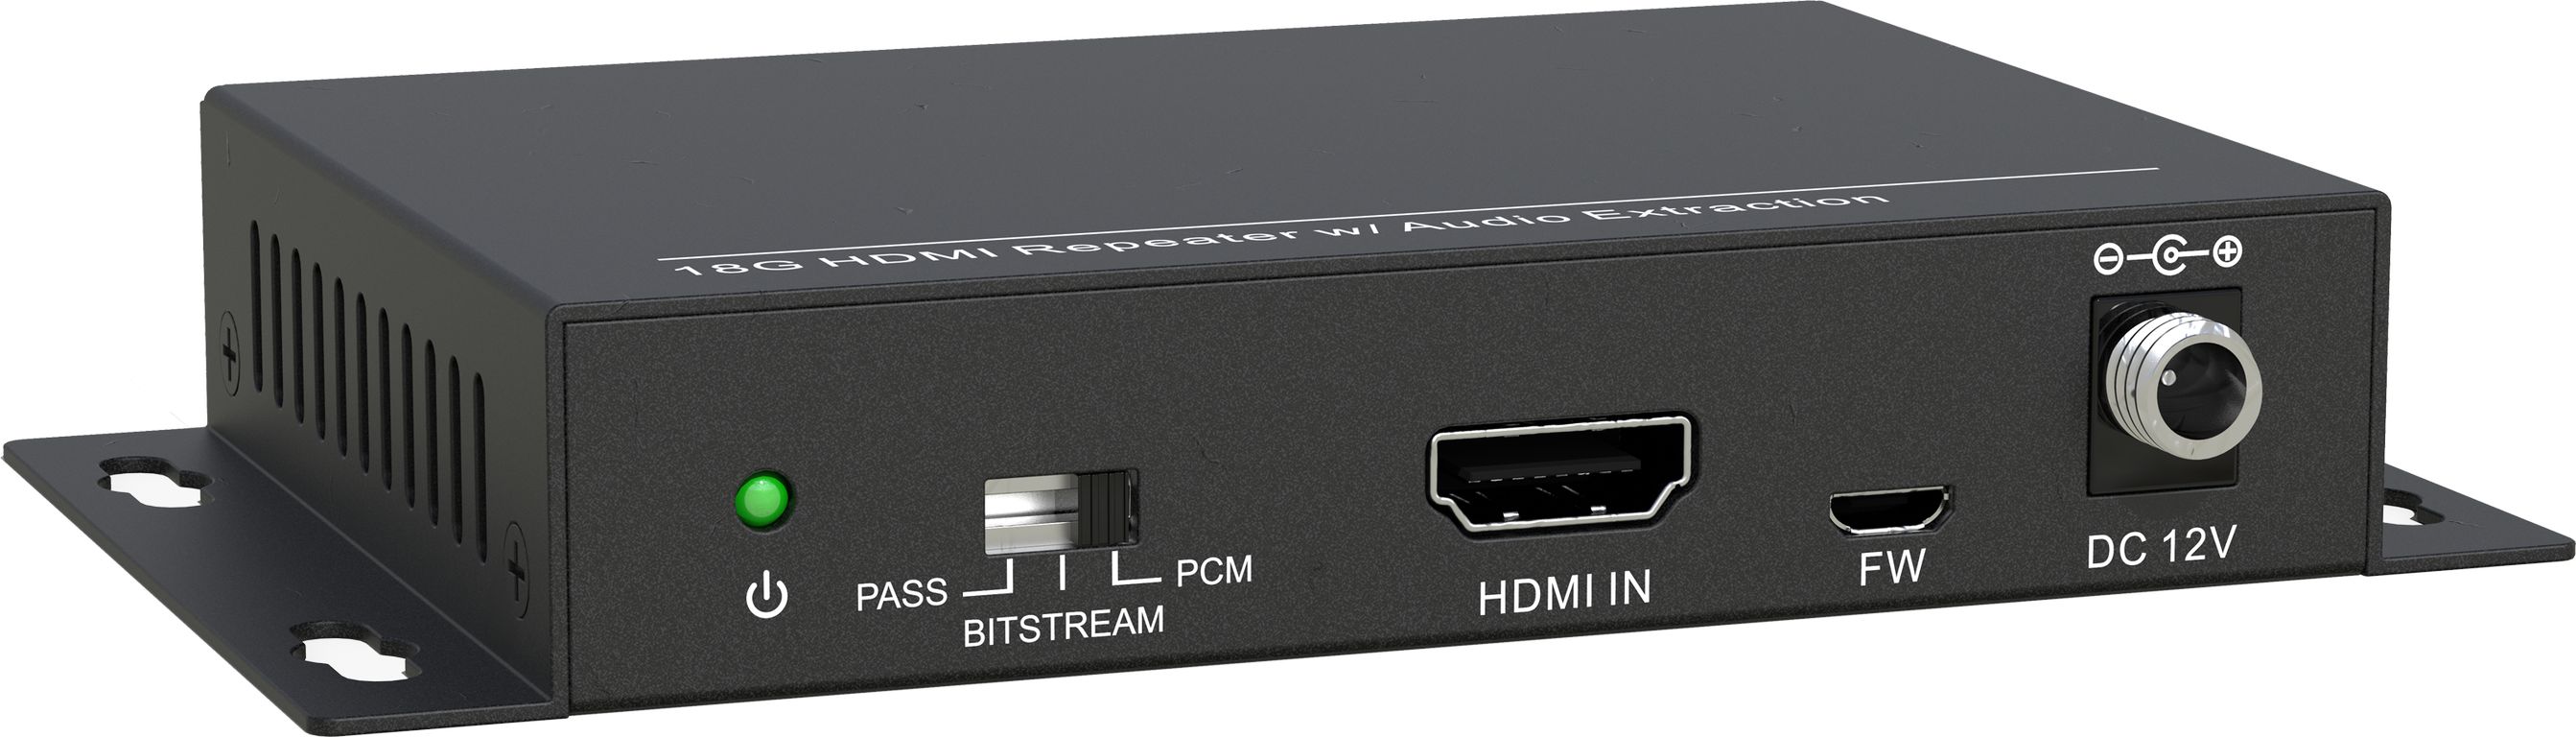 HDMI коммутаторы, разветвители, повторители Digis SS-AC1-4K2 hdmi коммутаторы разветвители повторители ecler veo axs4p